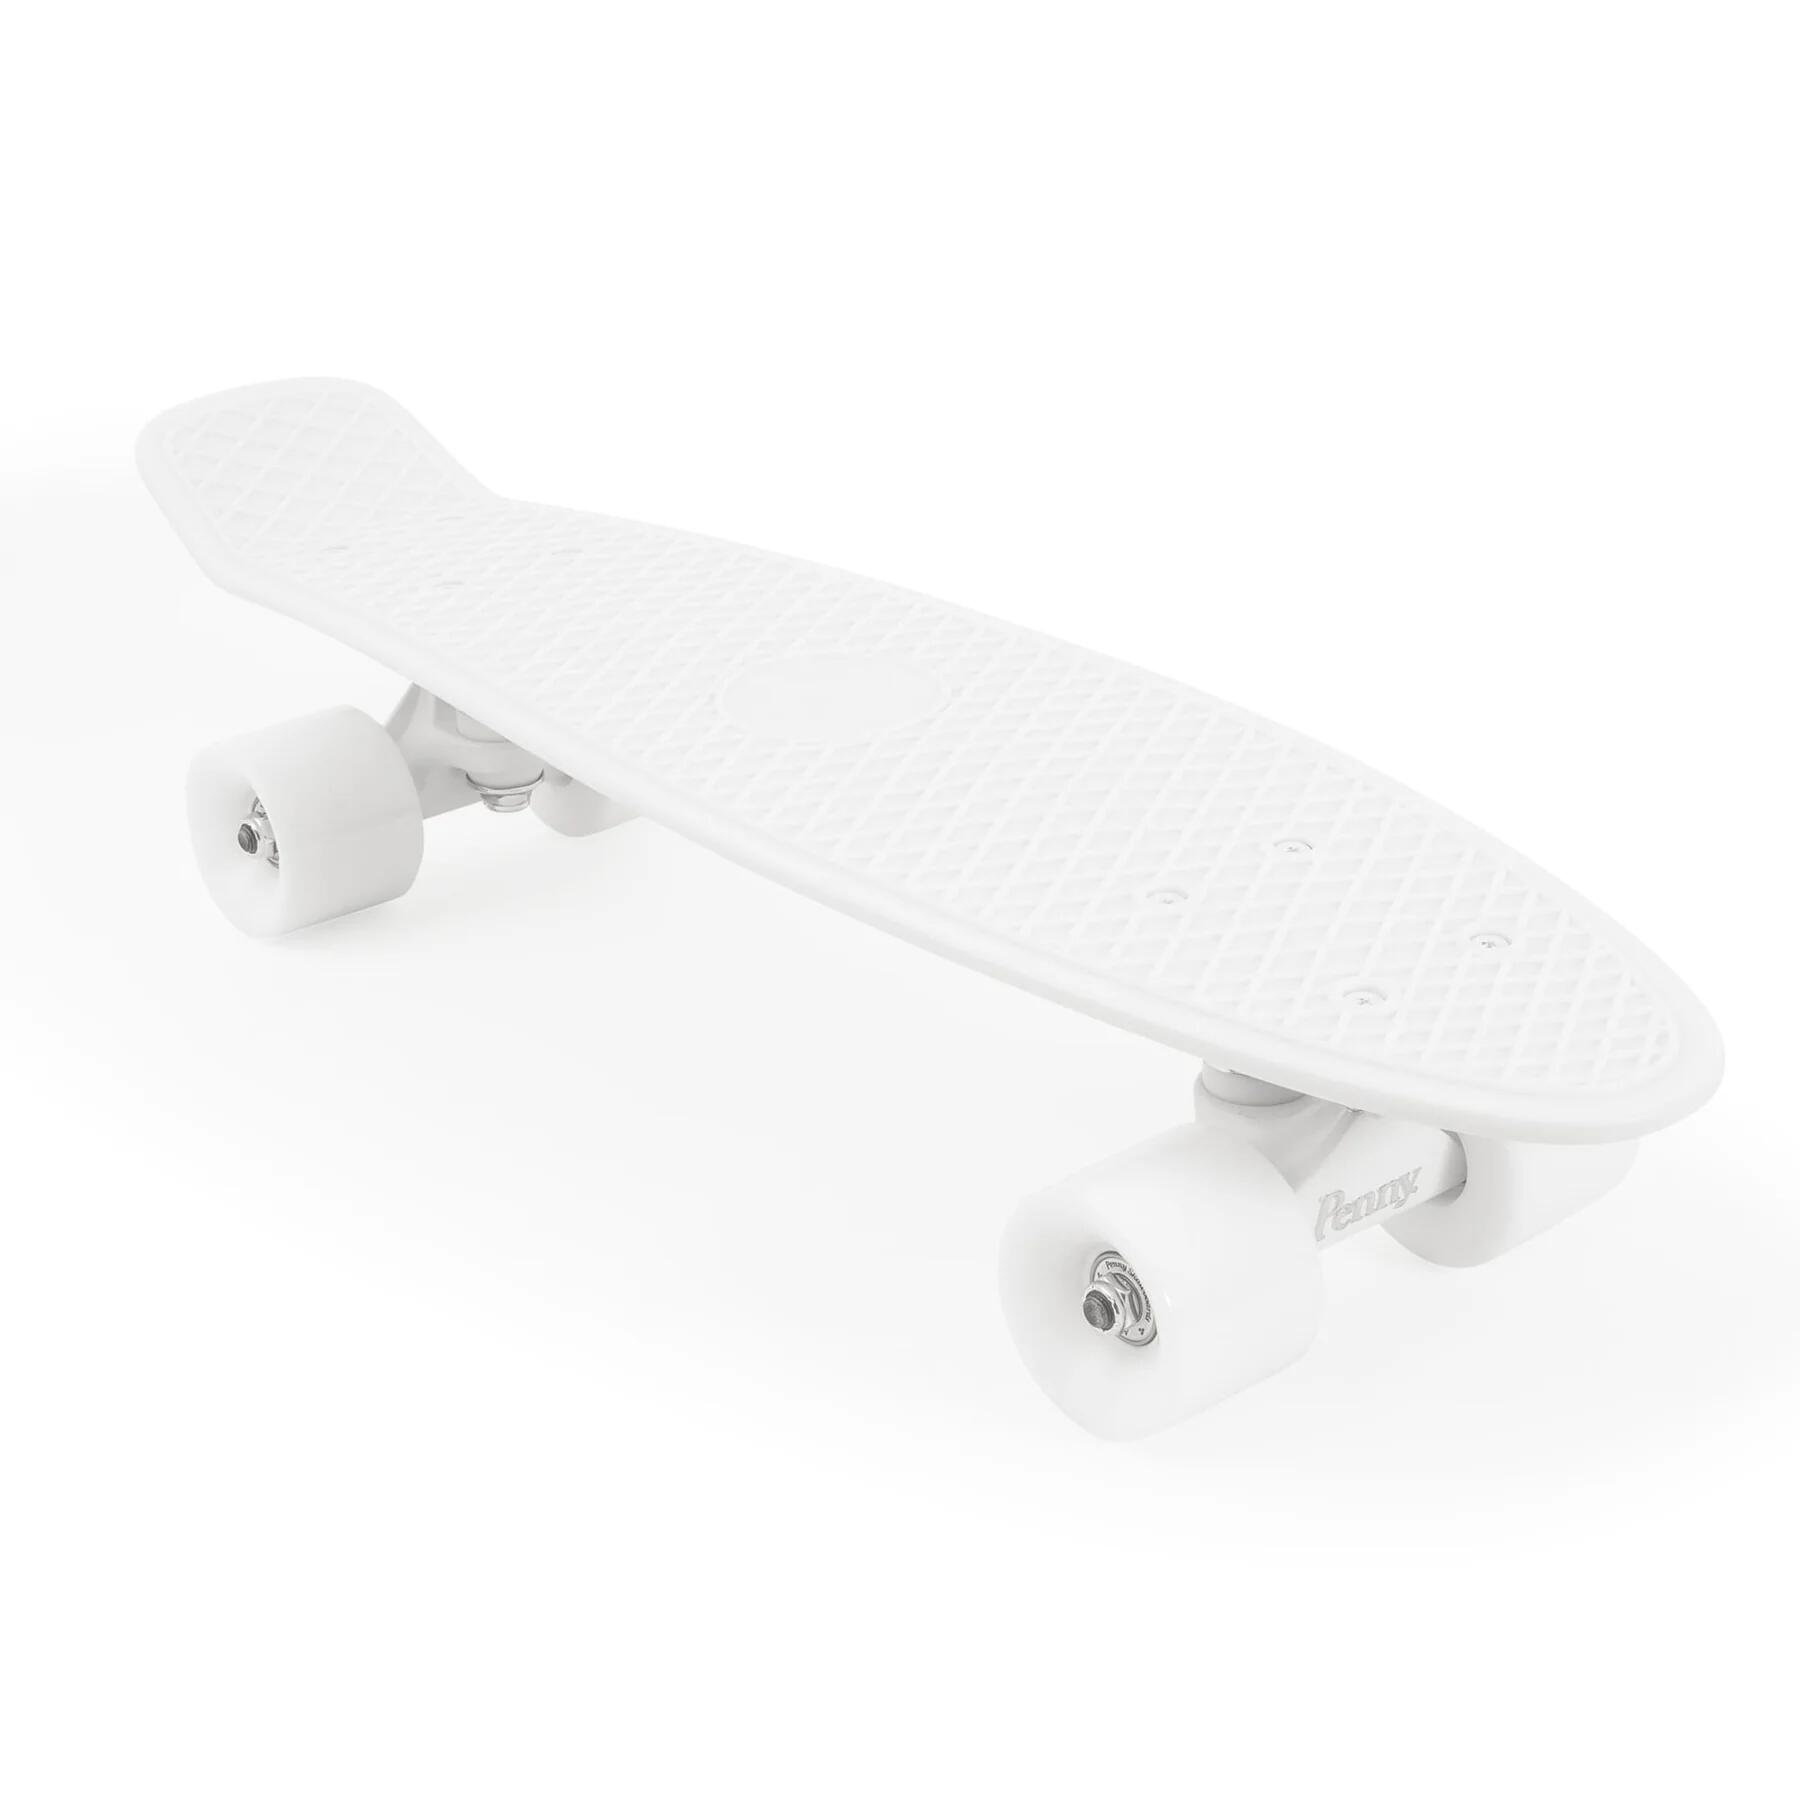 Complete 22inch OG Plastic Skateboard 6/7